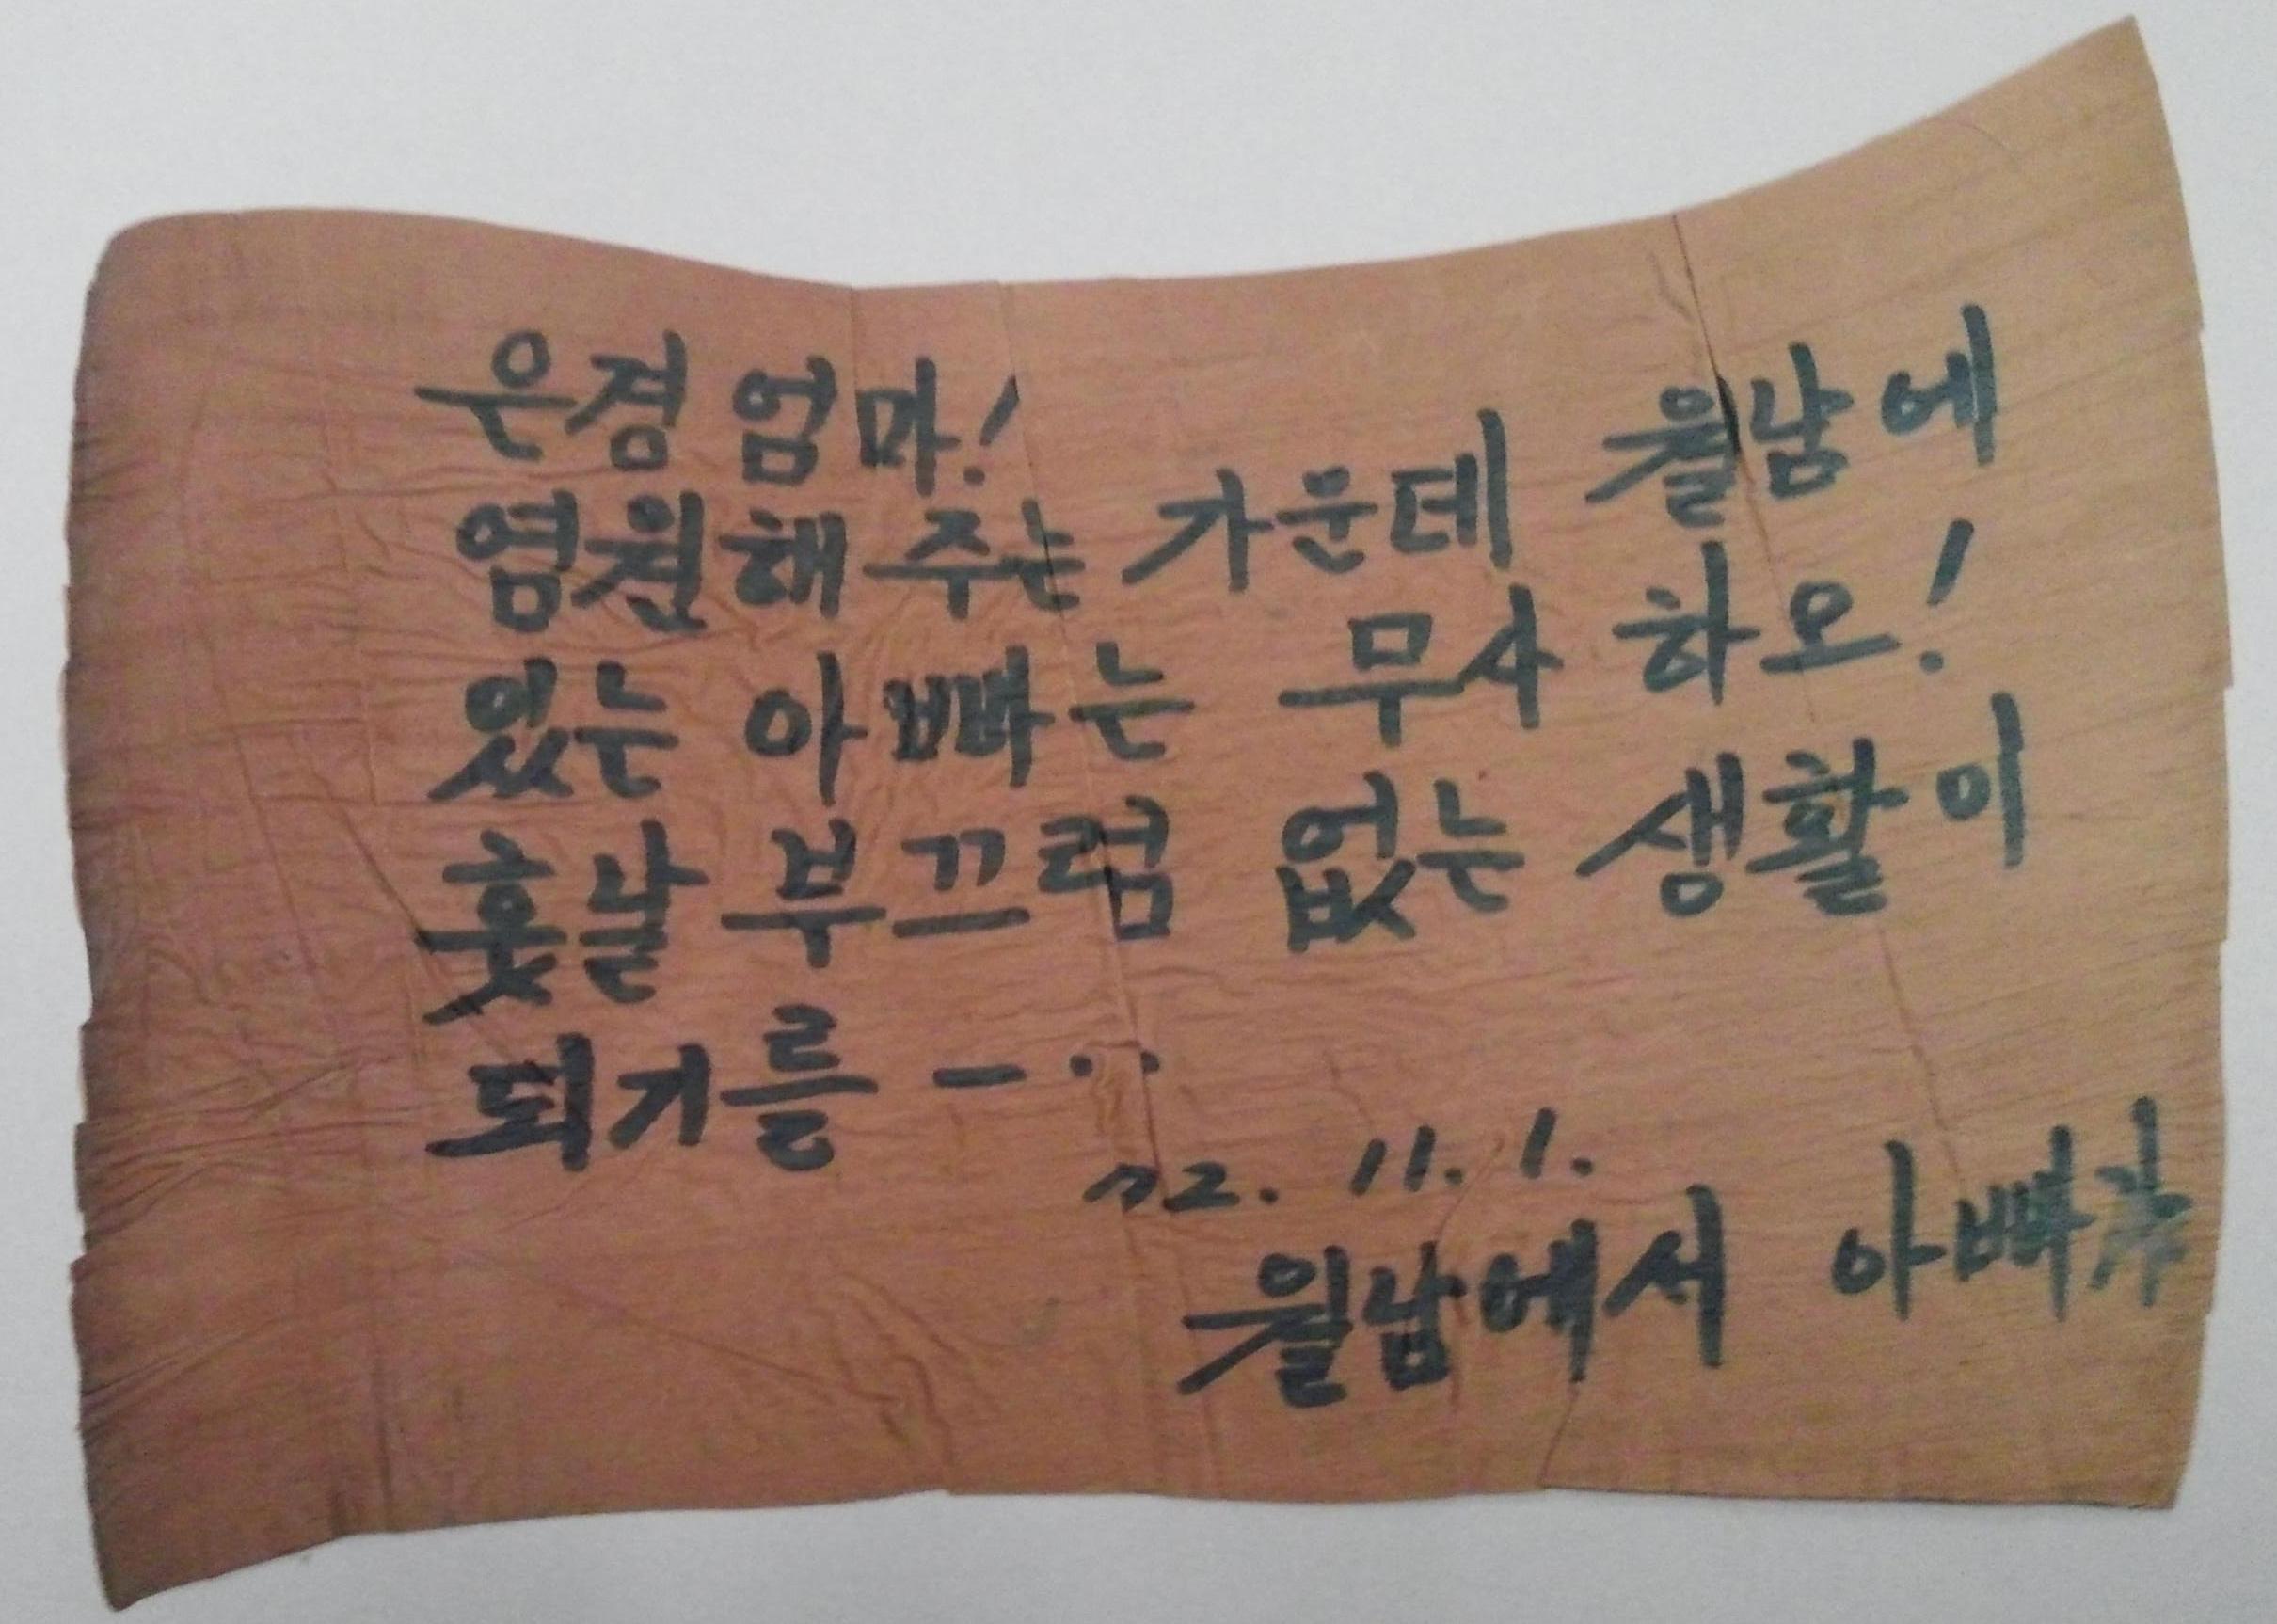 월남 파병 군인 정영환이 가족에게 보낸 바나나 잎 편지2